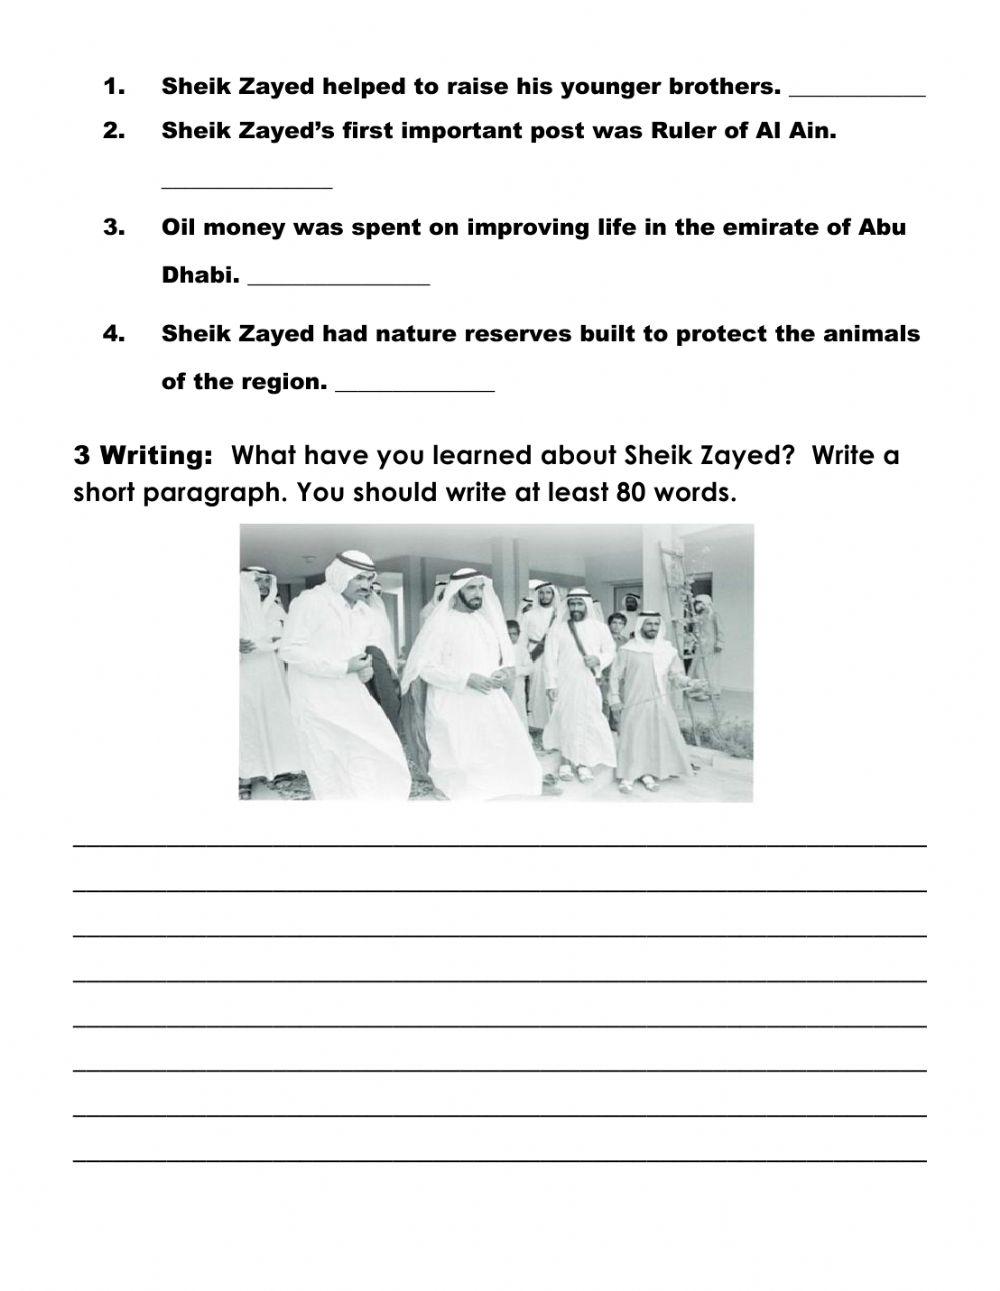 Sheik Zayed